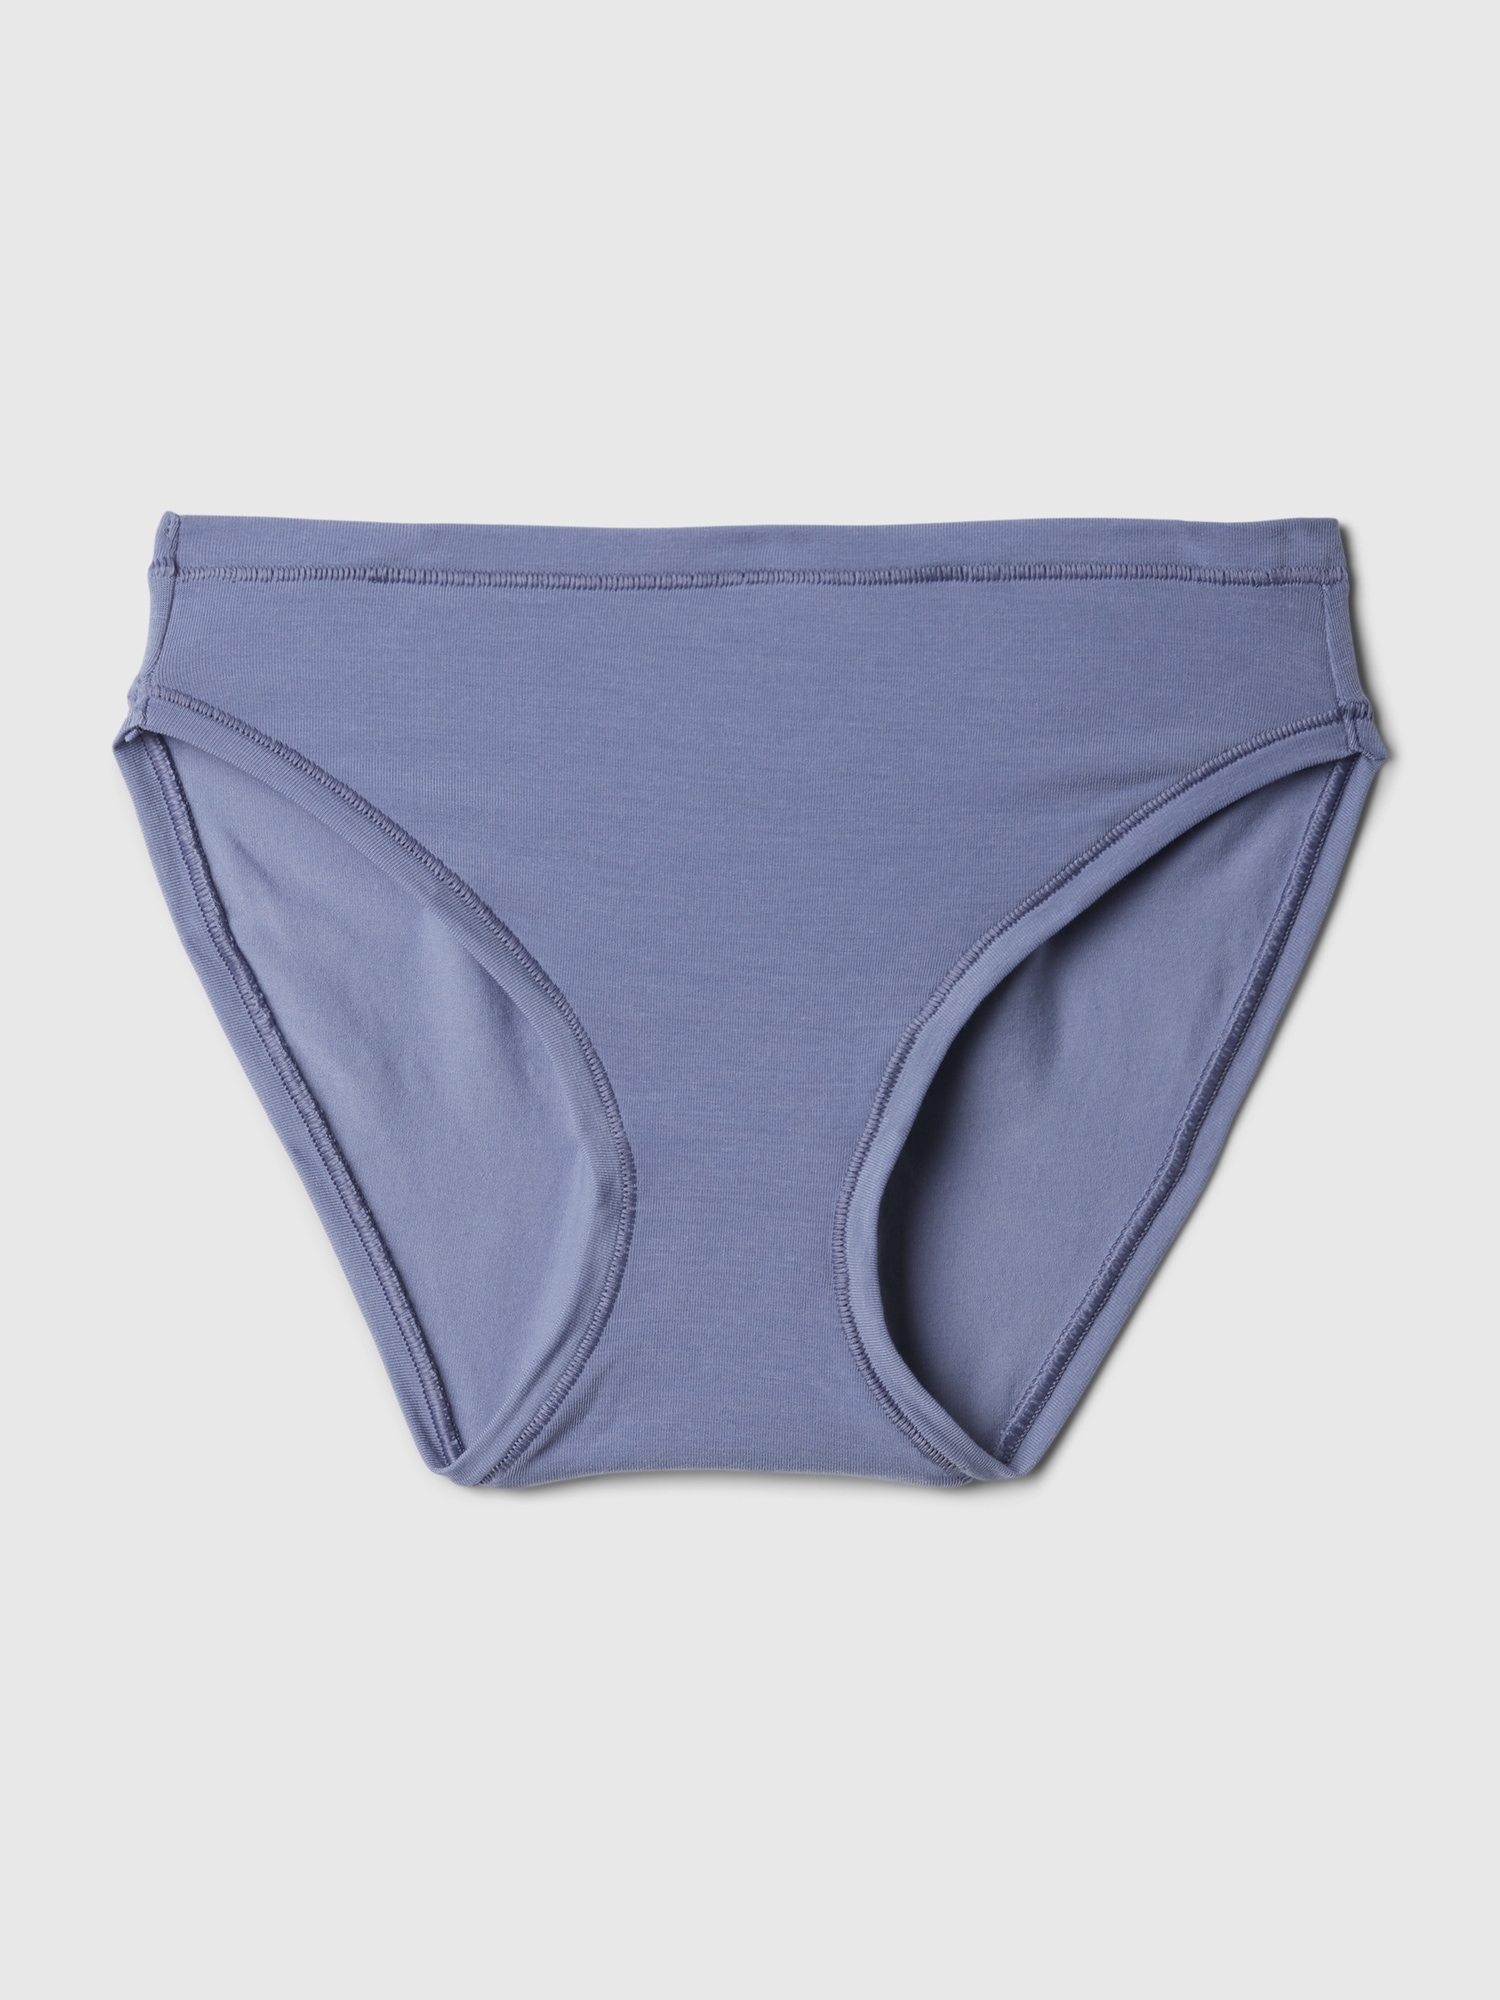 Gap Breathe Hipster Underwear Women's Undies Panty Panties Blue